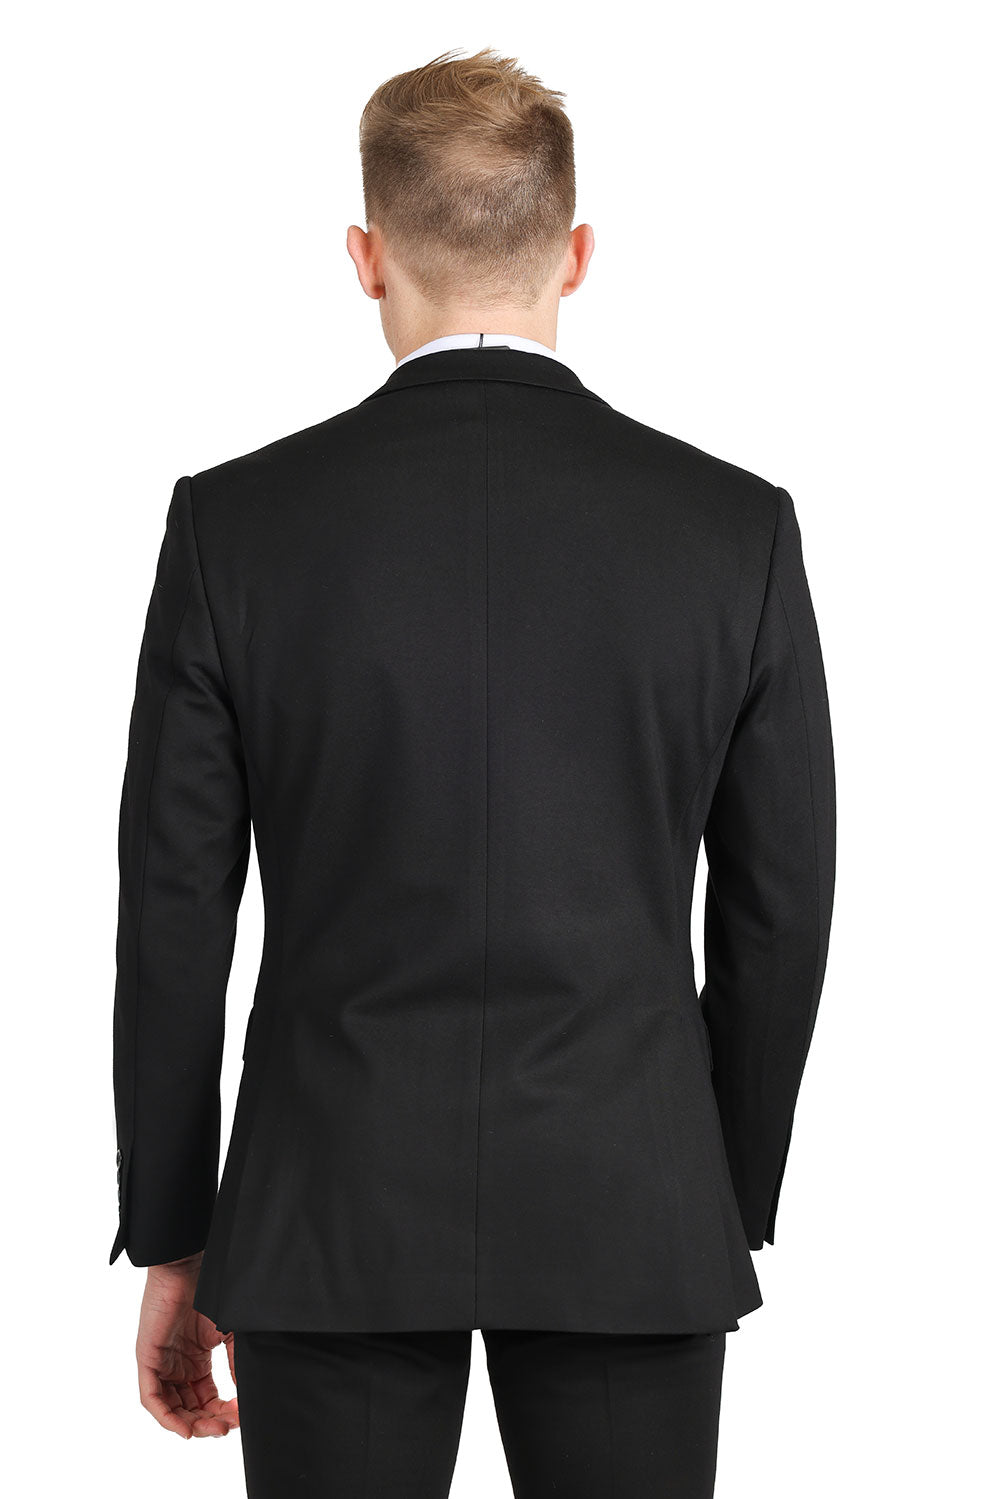 BARABAS Men's Brushed Cotton Notched Lapel Matt Suit 3SU02 Black